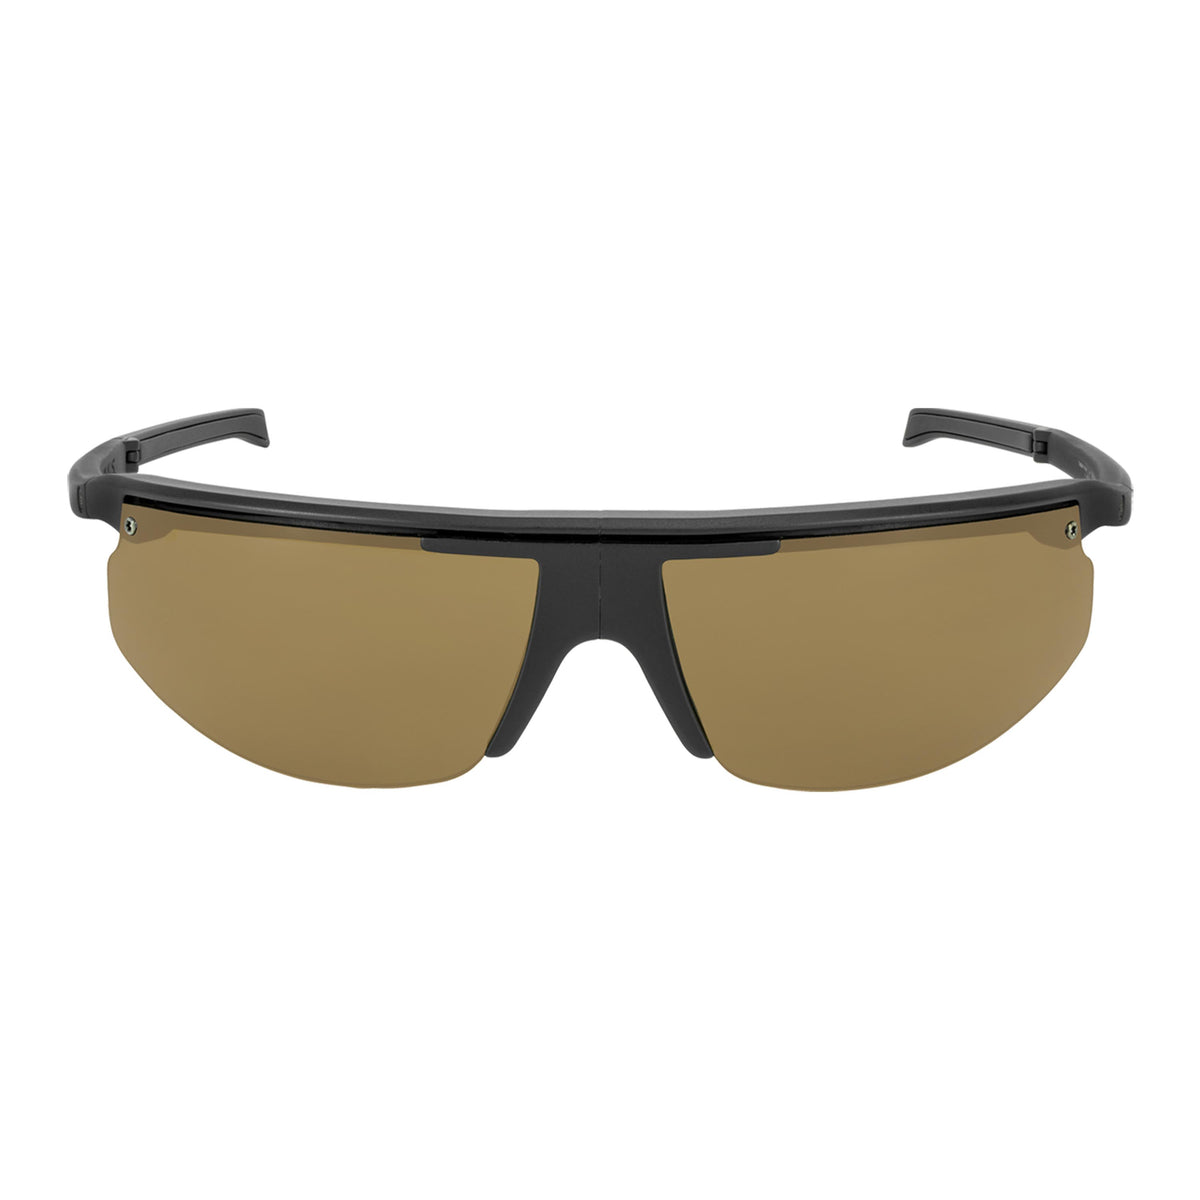 Popticals, Premium Compact Sunglasses, PopStar, 010040-BMNP, Polarized Sunglasses, Matte Black Frame, Brown Lenses, Front View